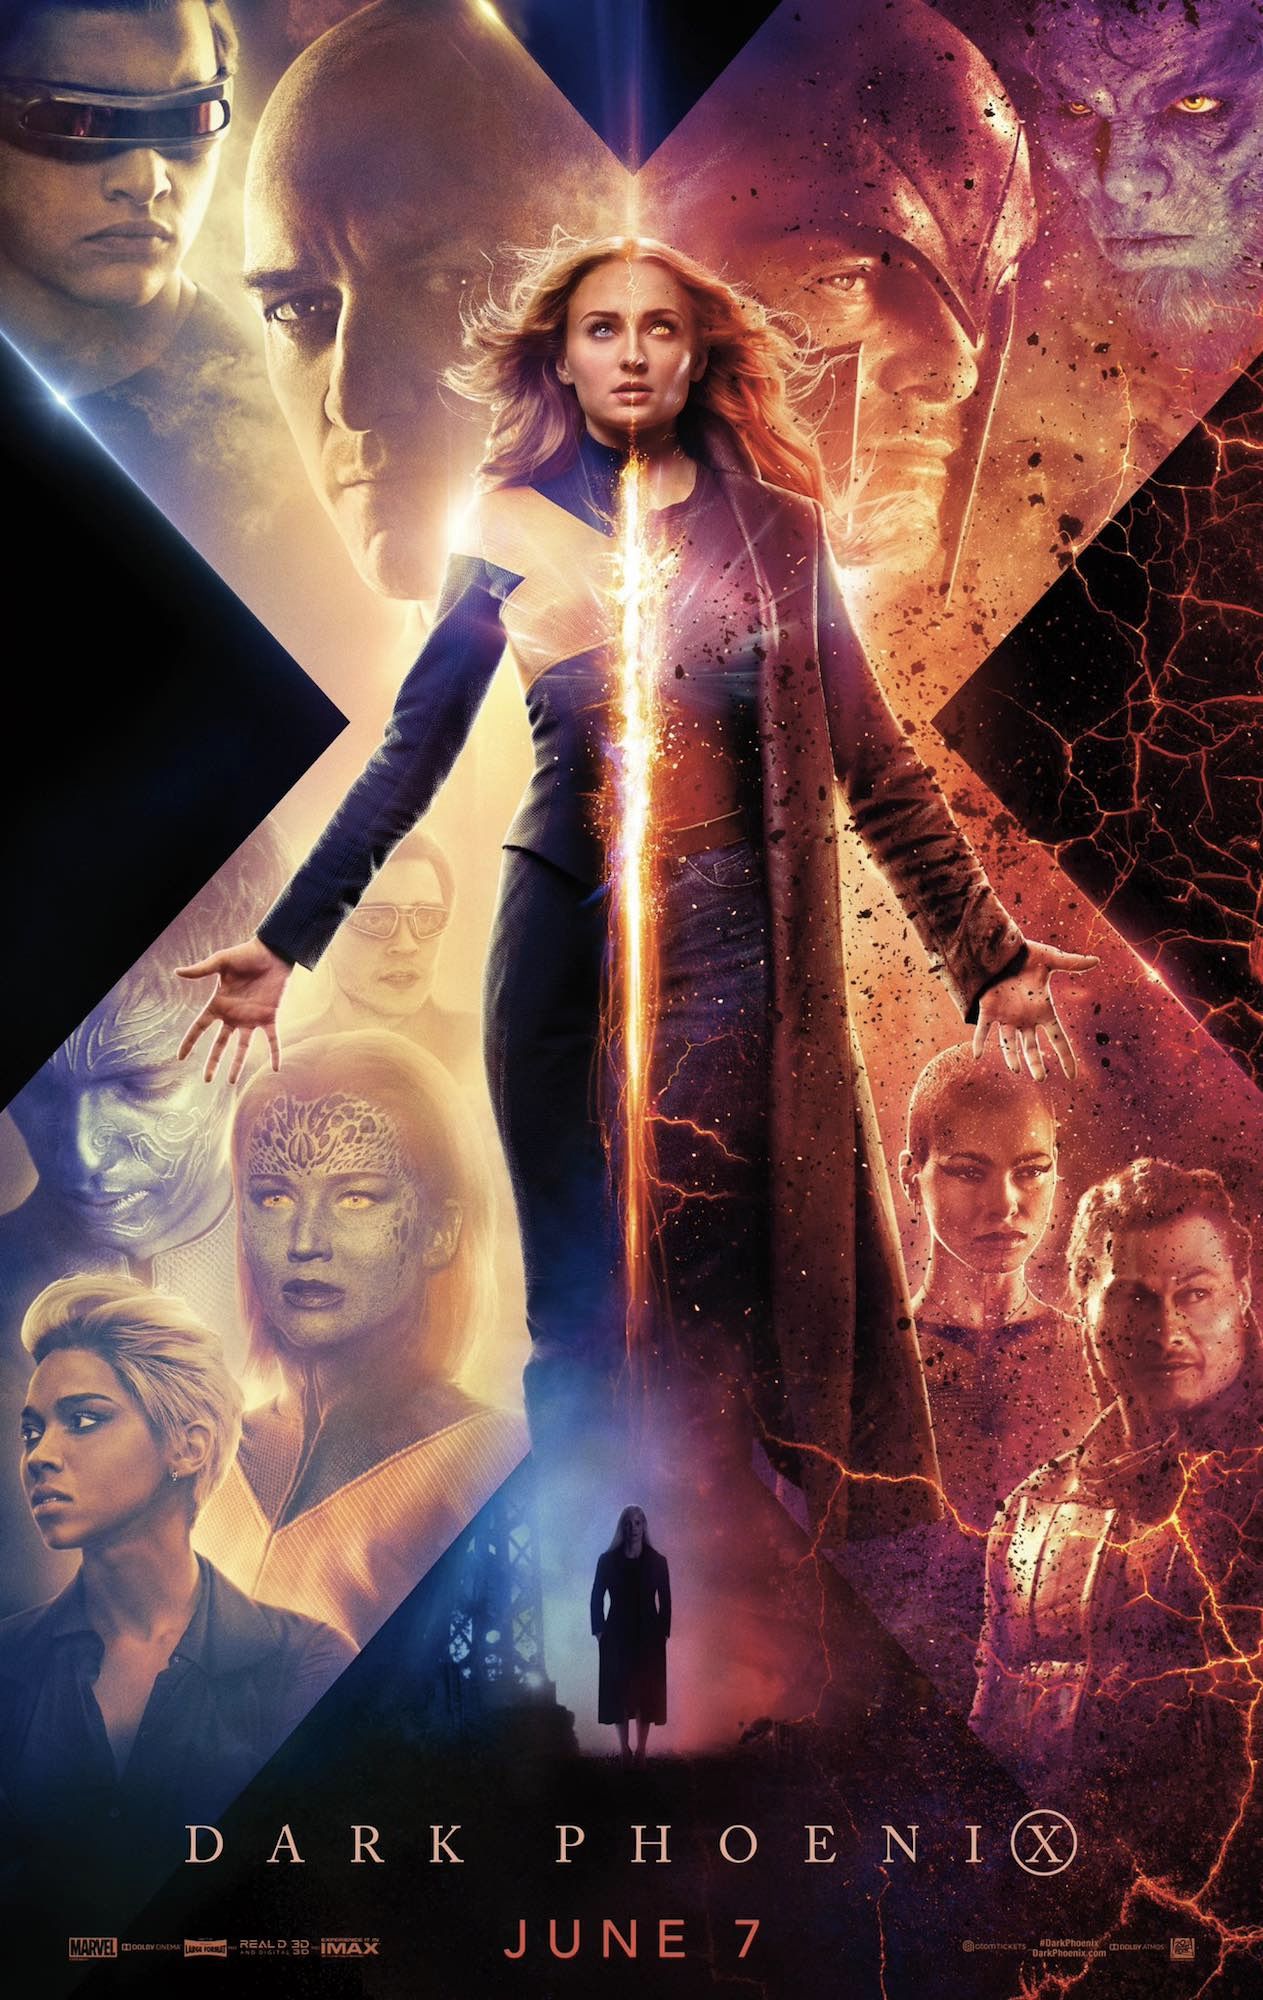 X-Men Dark Phoenix Poster